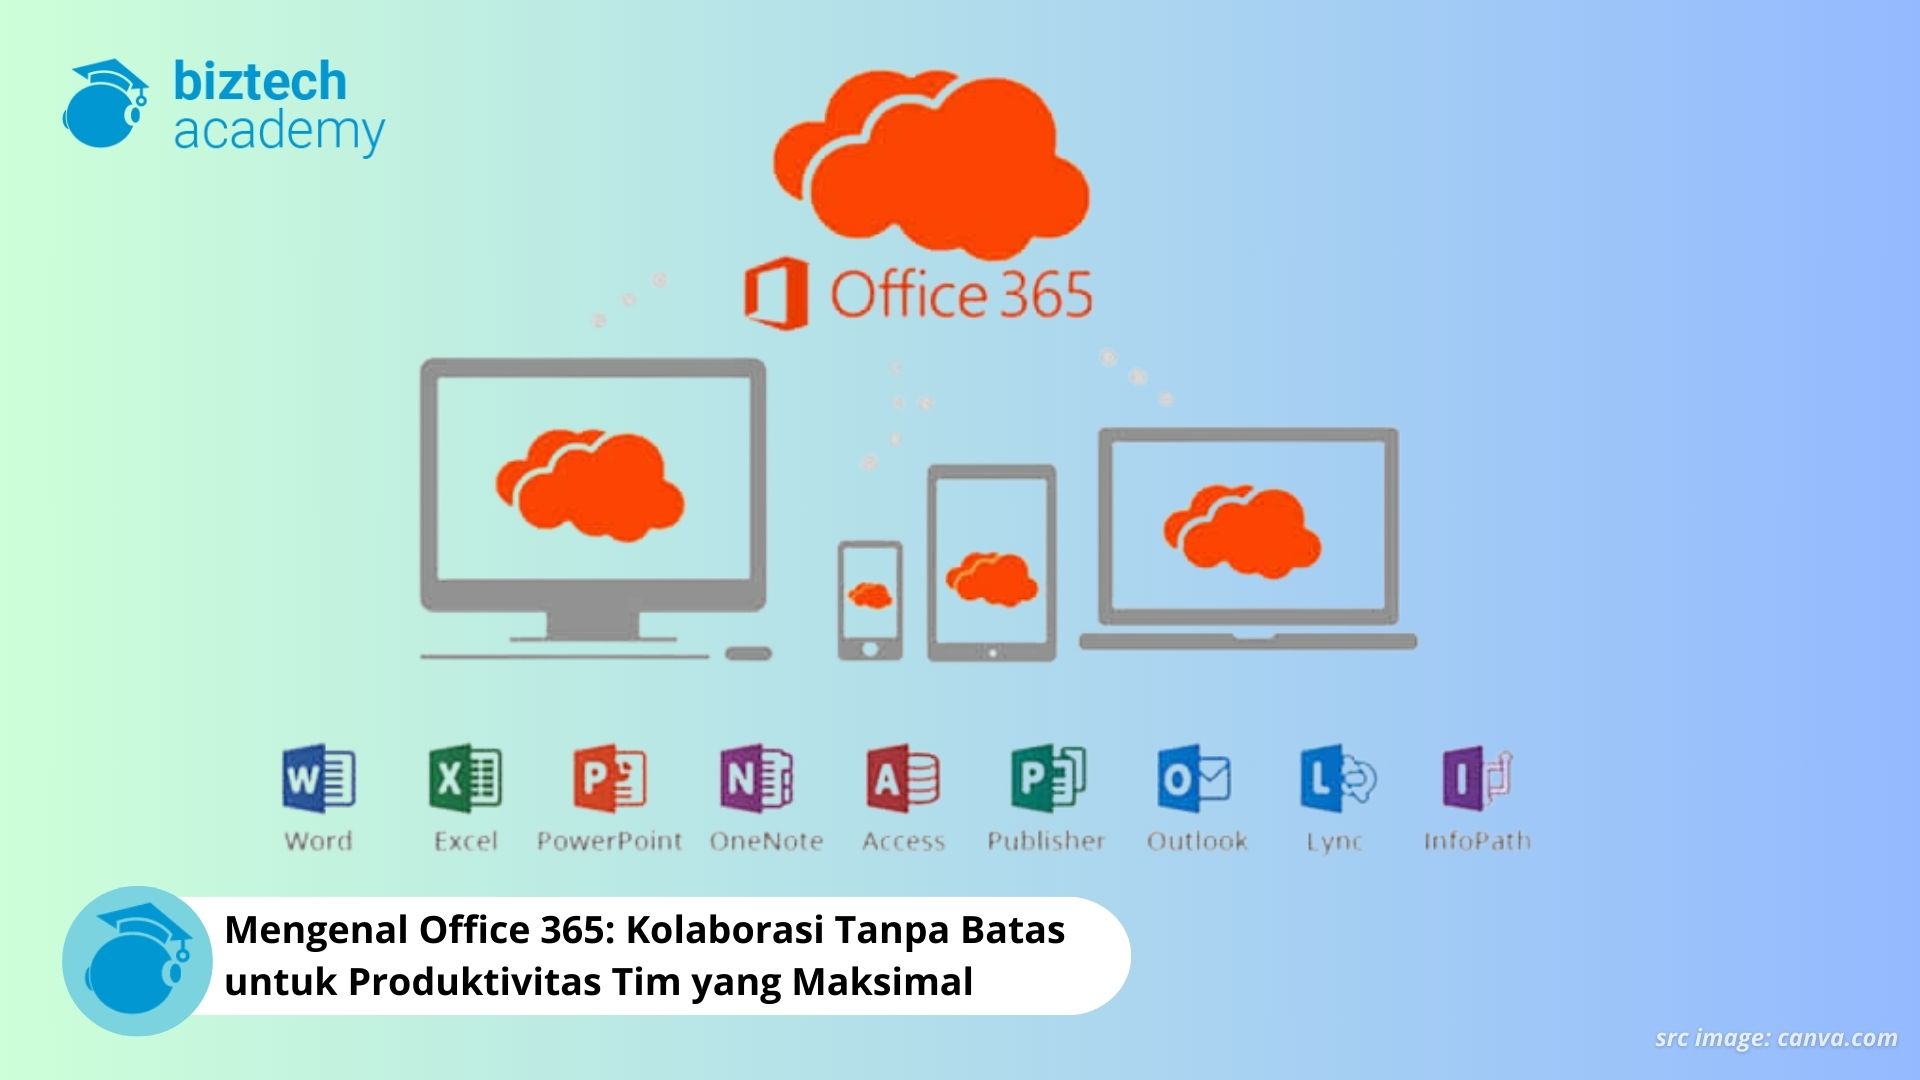 Mengenal Office 365 Kolaborasi Tanpa Batas untuk Produktivitas Tim yang Maksimal